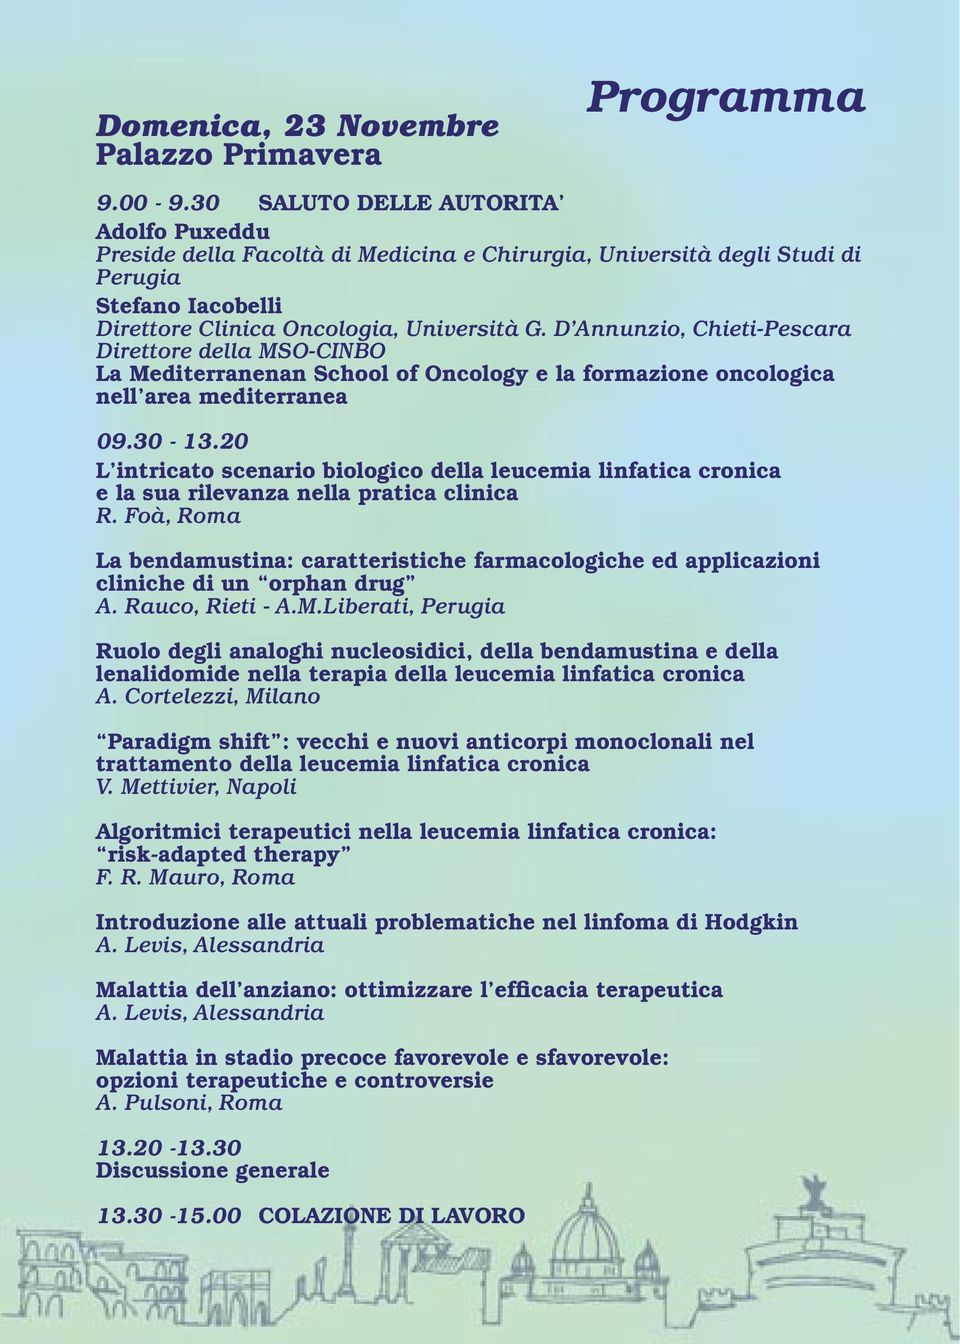 D Annunzio, Chieti-Pescara Direttore della MSO-CINBO La Mediterranenan School of Oncology e la formazione oncologica nell area mediterranea 09.30-13.